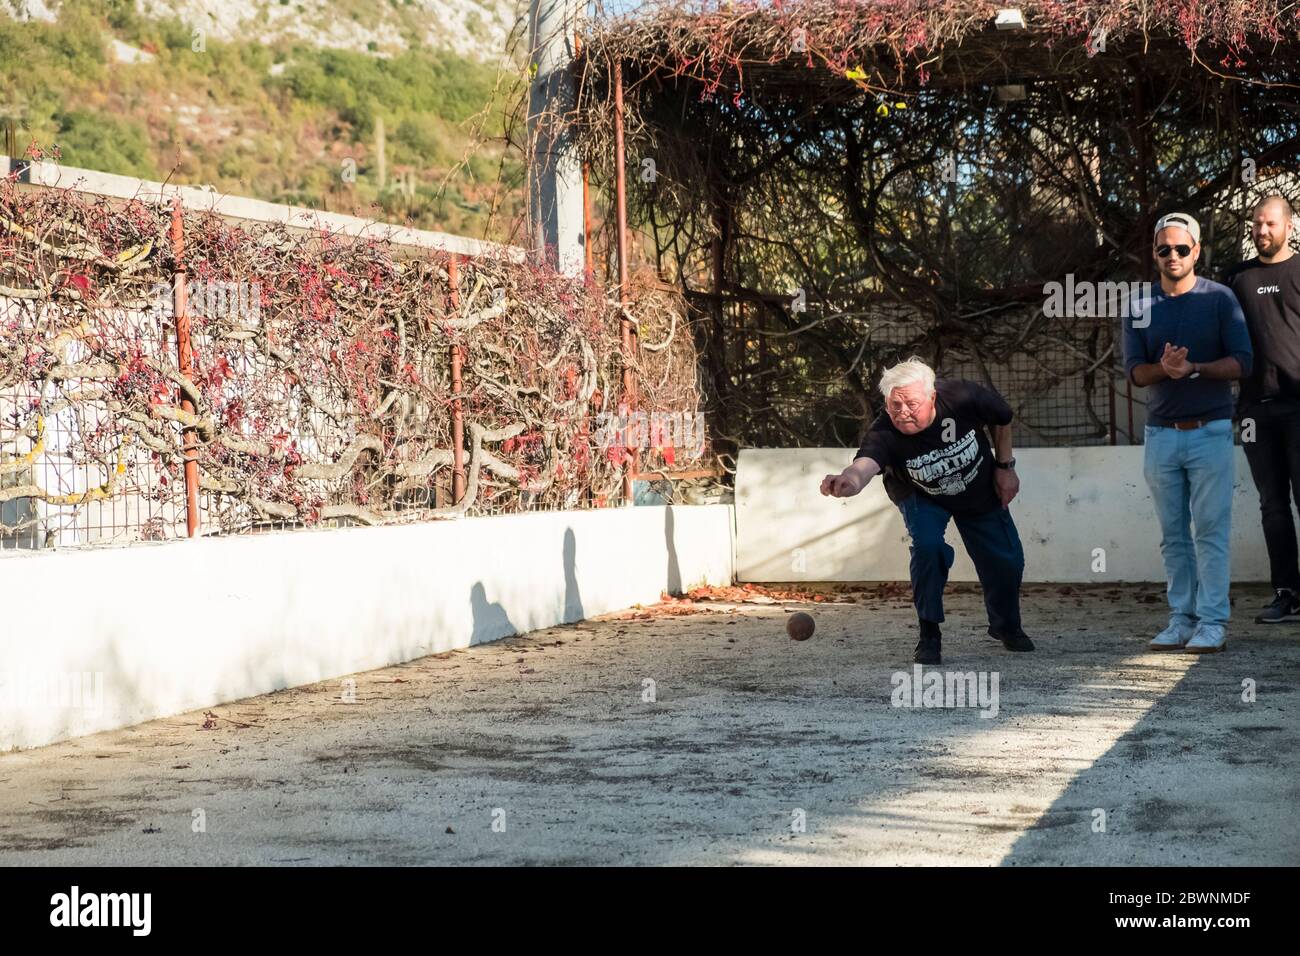 Un homme plus âgé lance une boule de bowling tandis que 2 jeunes hommes regardent, à une piste de bowling en extérieur sur pelouse à Dalmatie, Croatie Banque D'Images